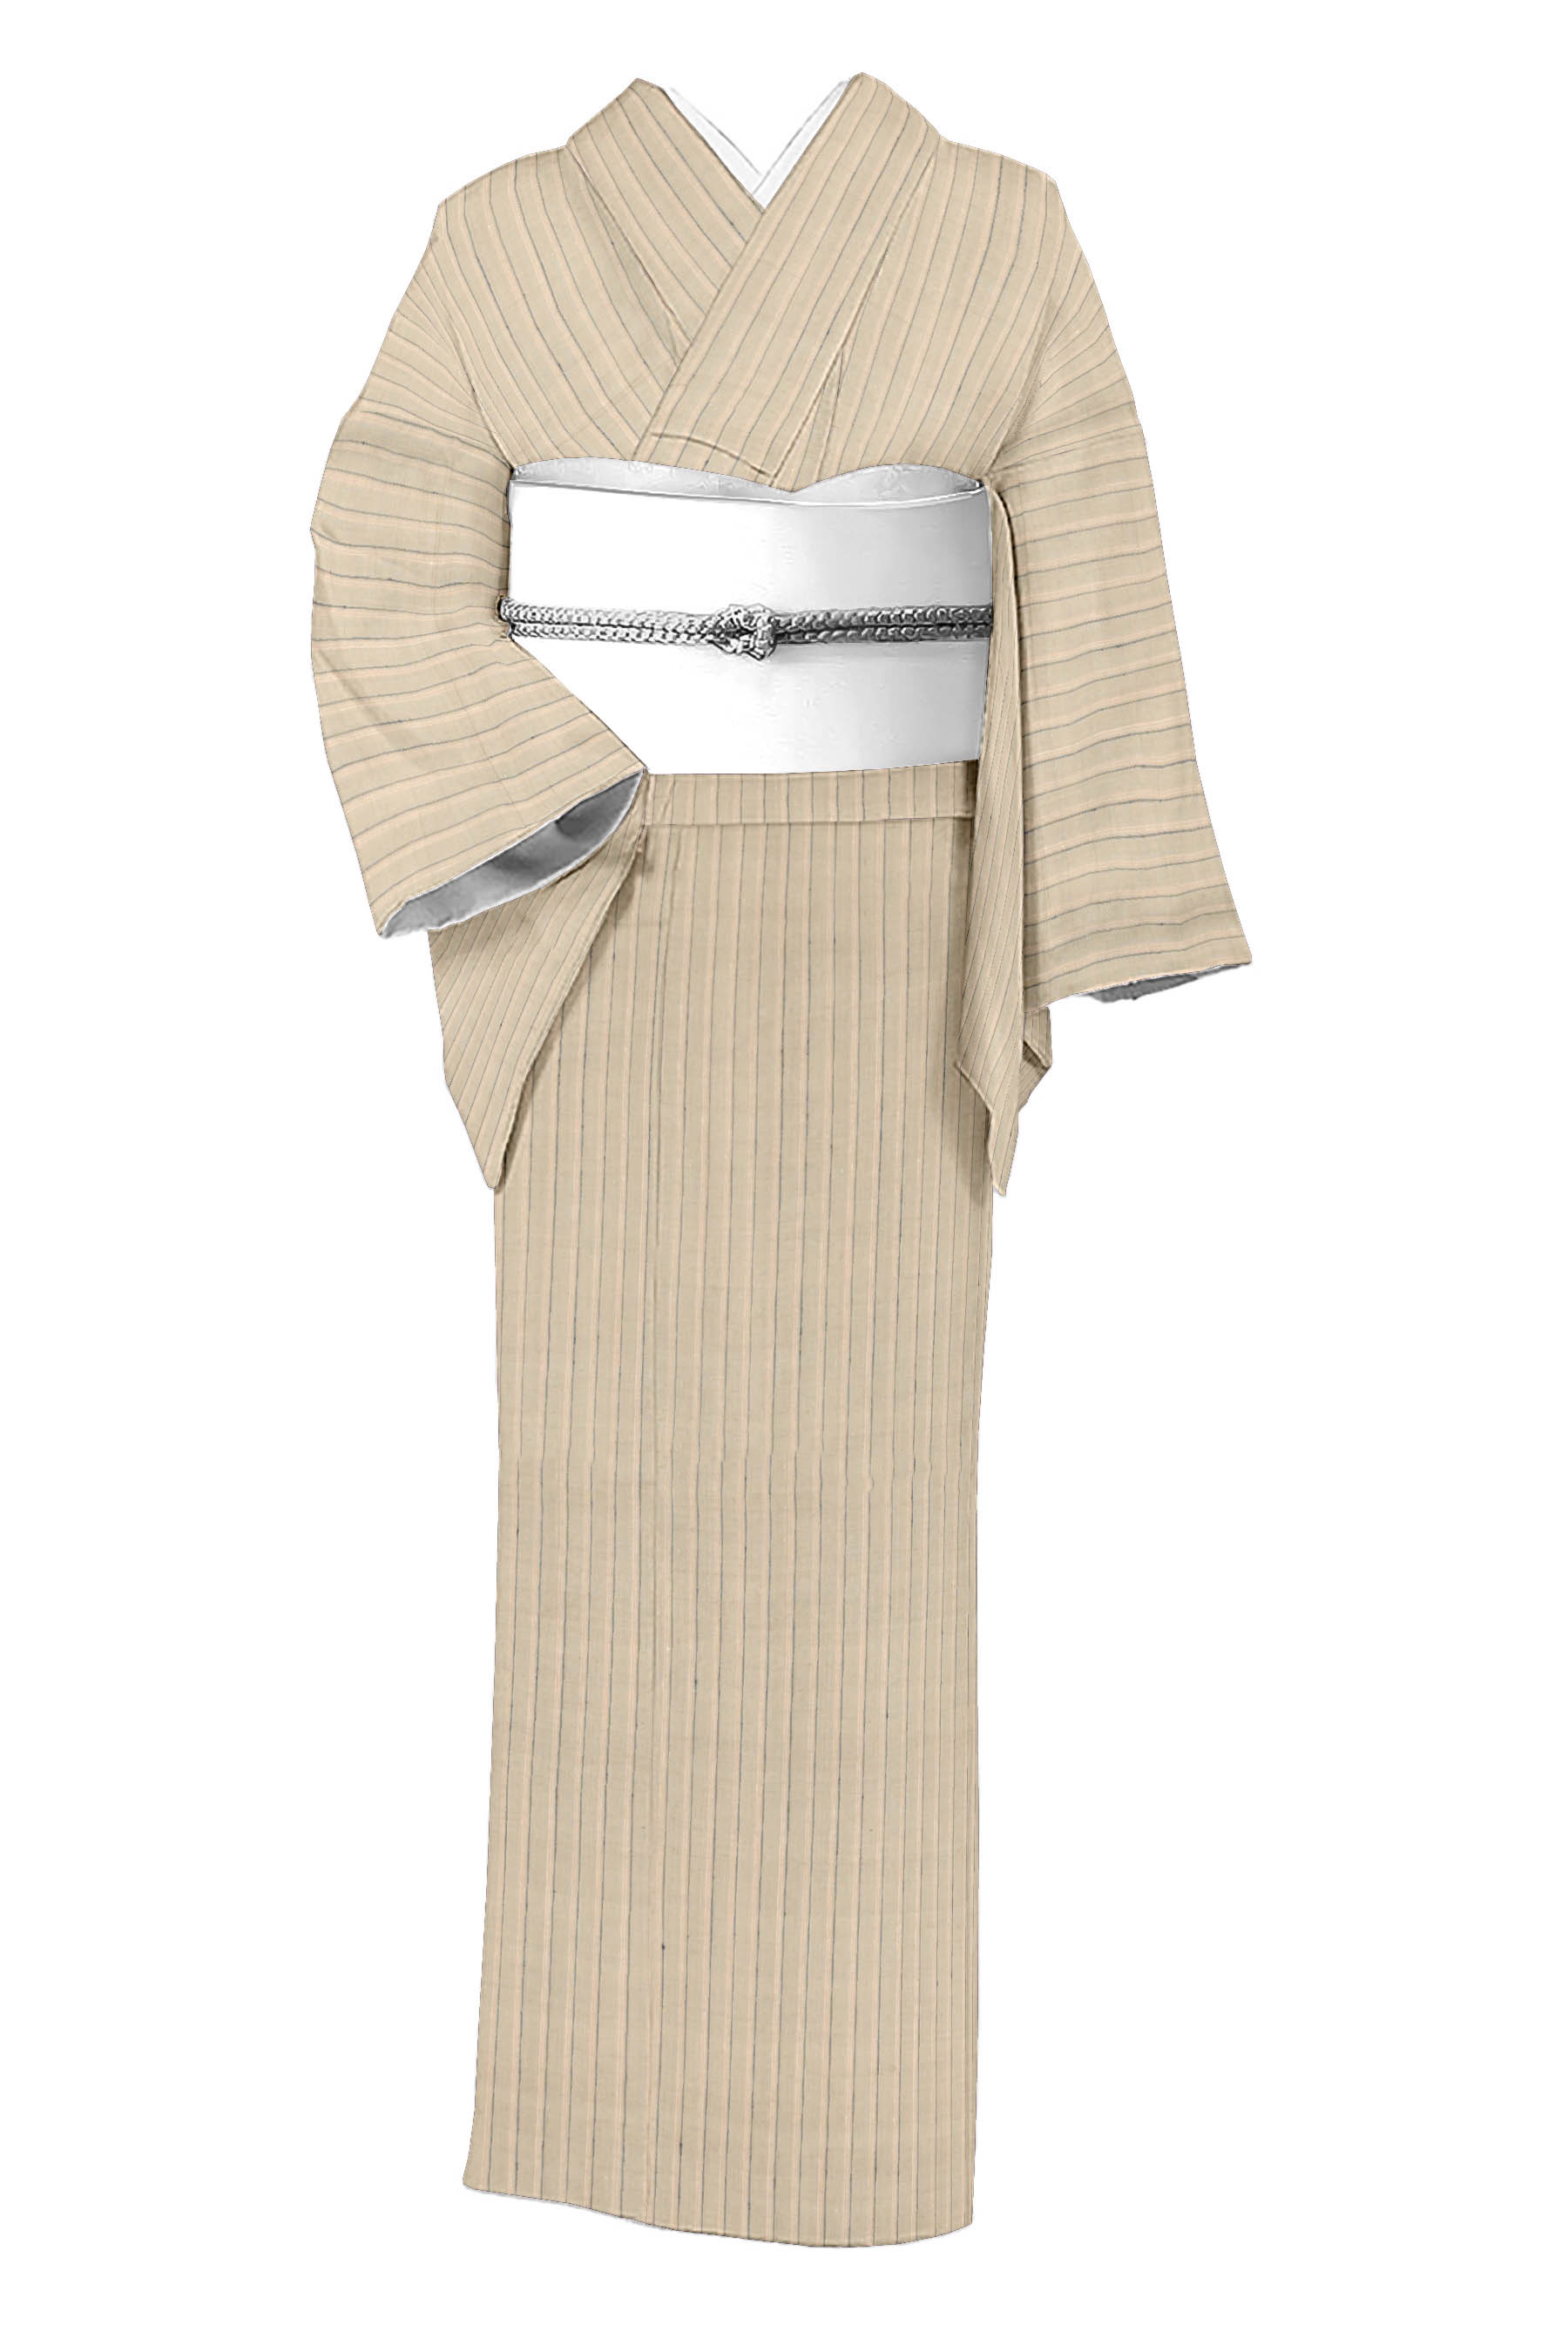 新田織物の着物・帯の一覧|京都きもの市場【日本最大級の着物通販サイト】